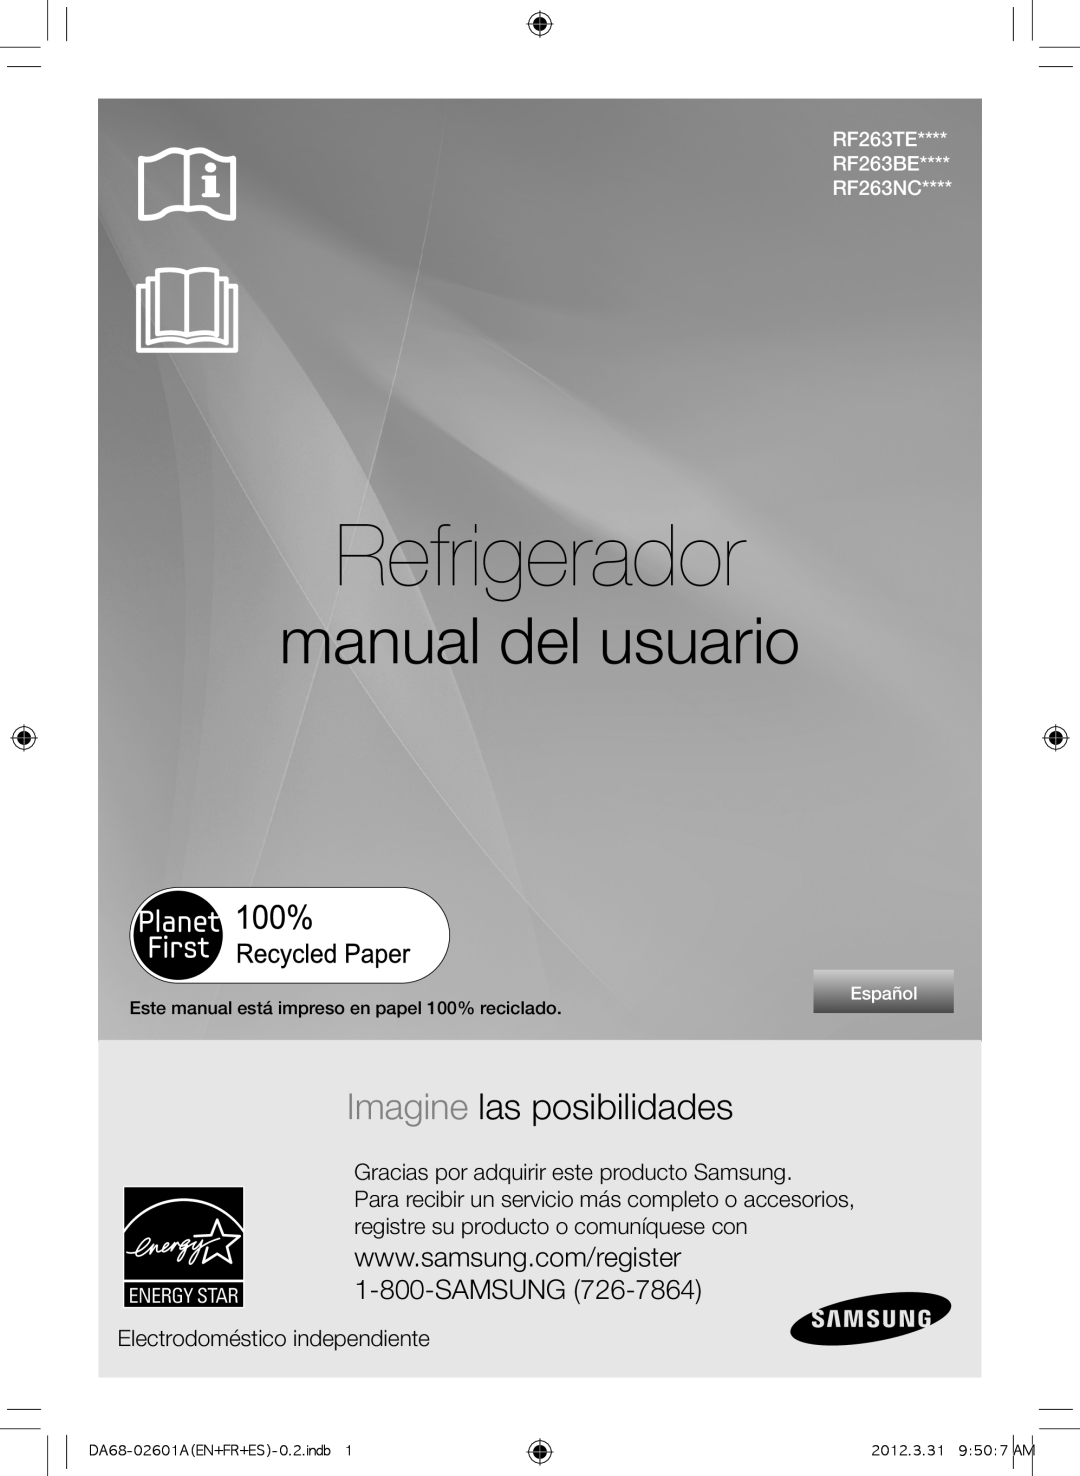 Samsung RF263BEAEBC Refrigerador, manual del usuario, Imagine las posibilidades, Electrodoméstico independiente, Español 